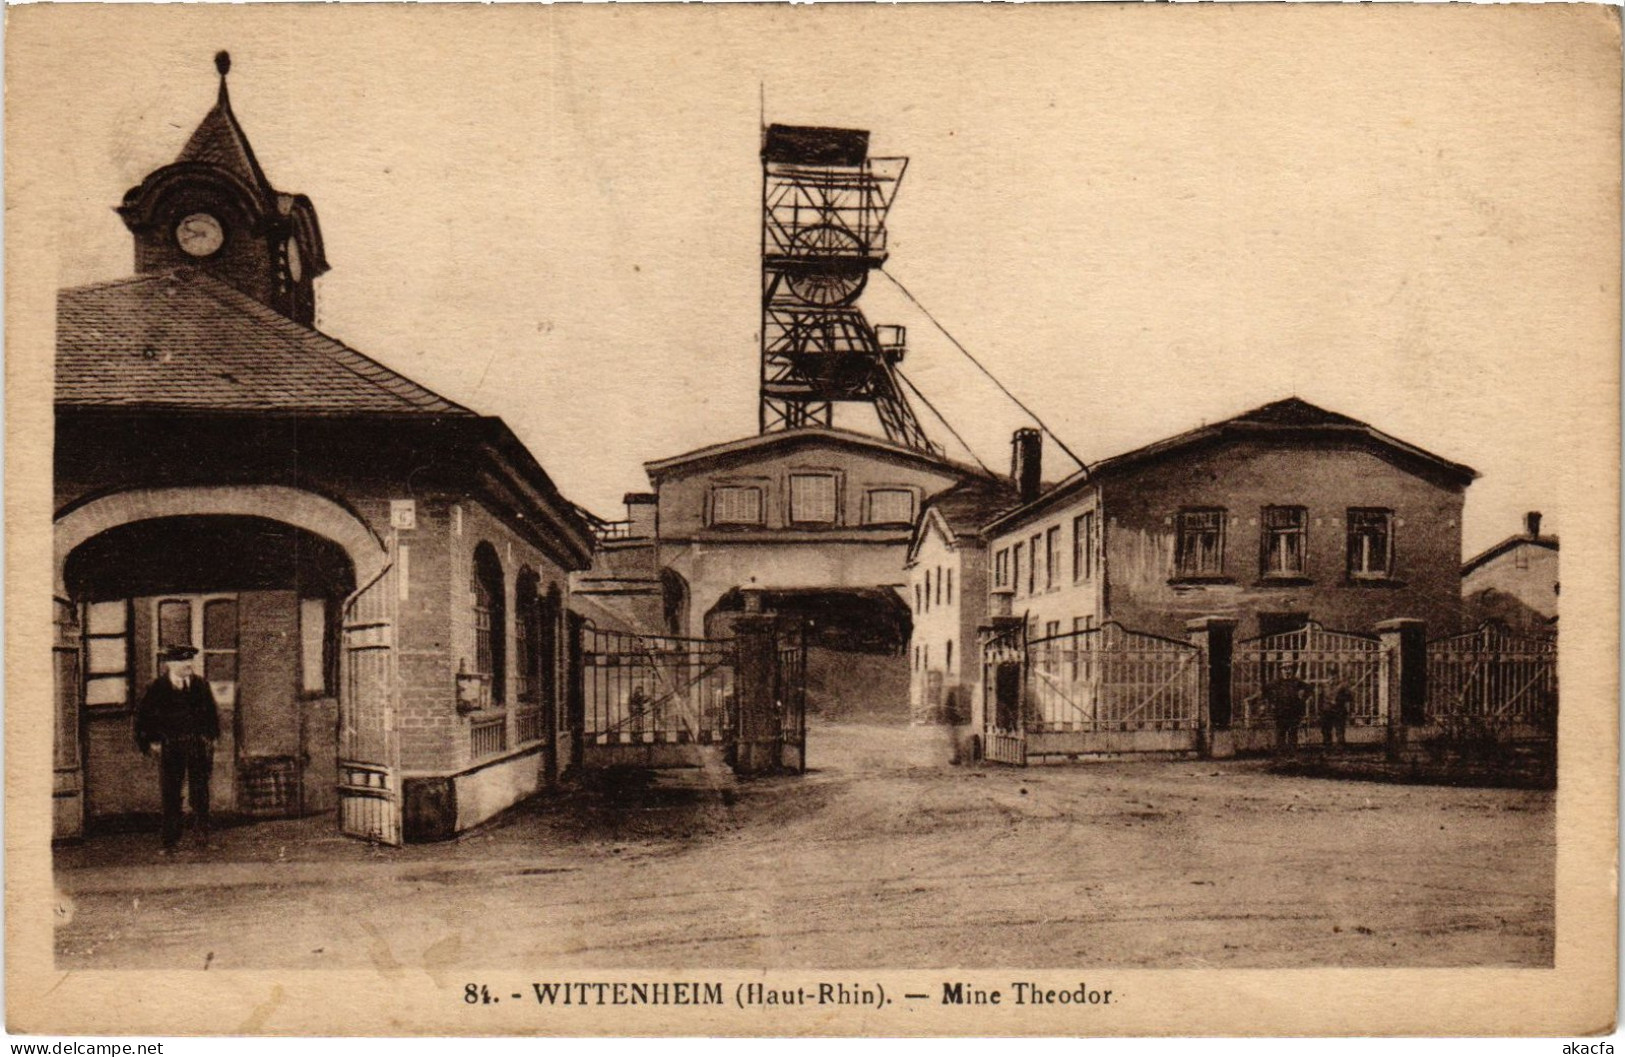 CPA Wittenheim Mine Theodor Mining Industry (1390453) - Wittenheim